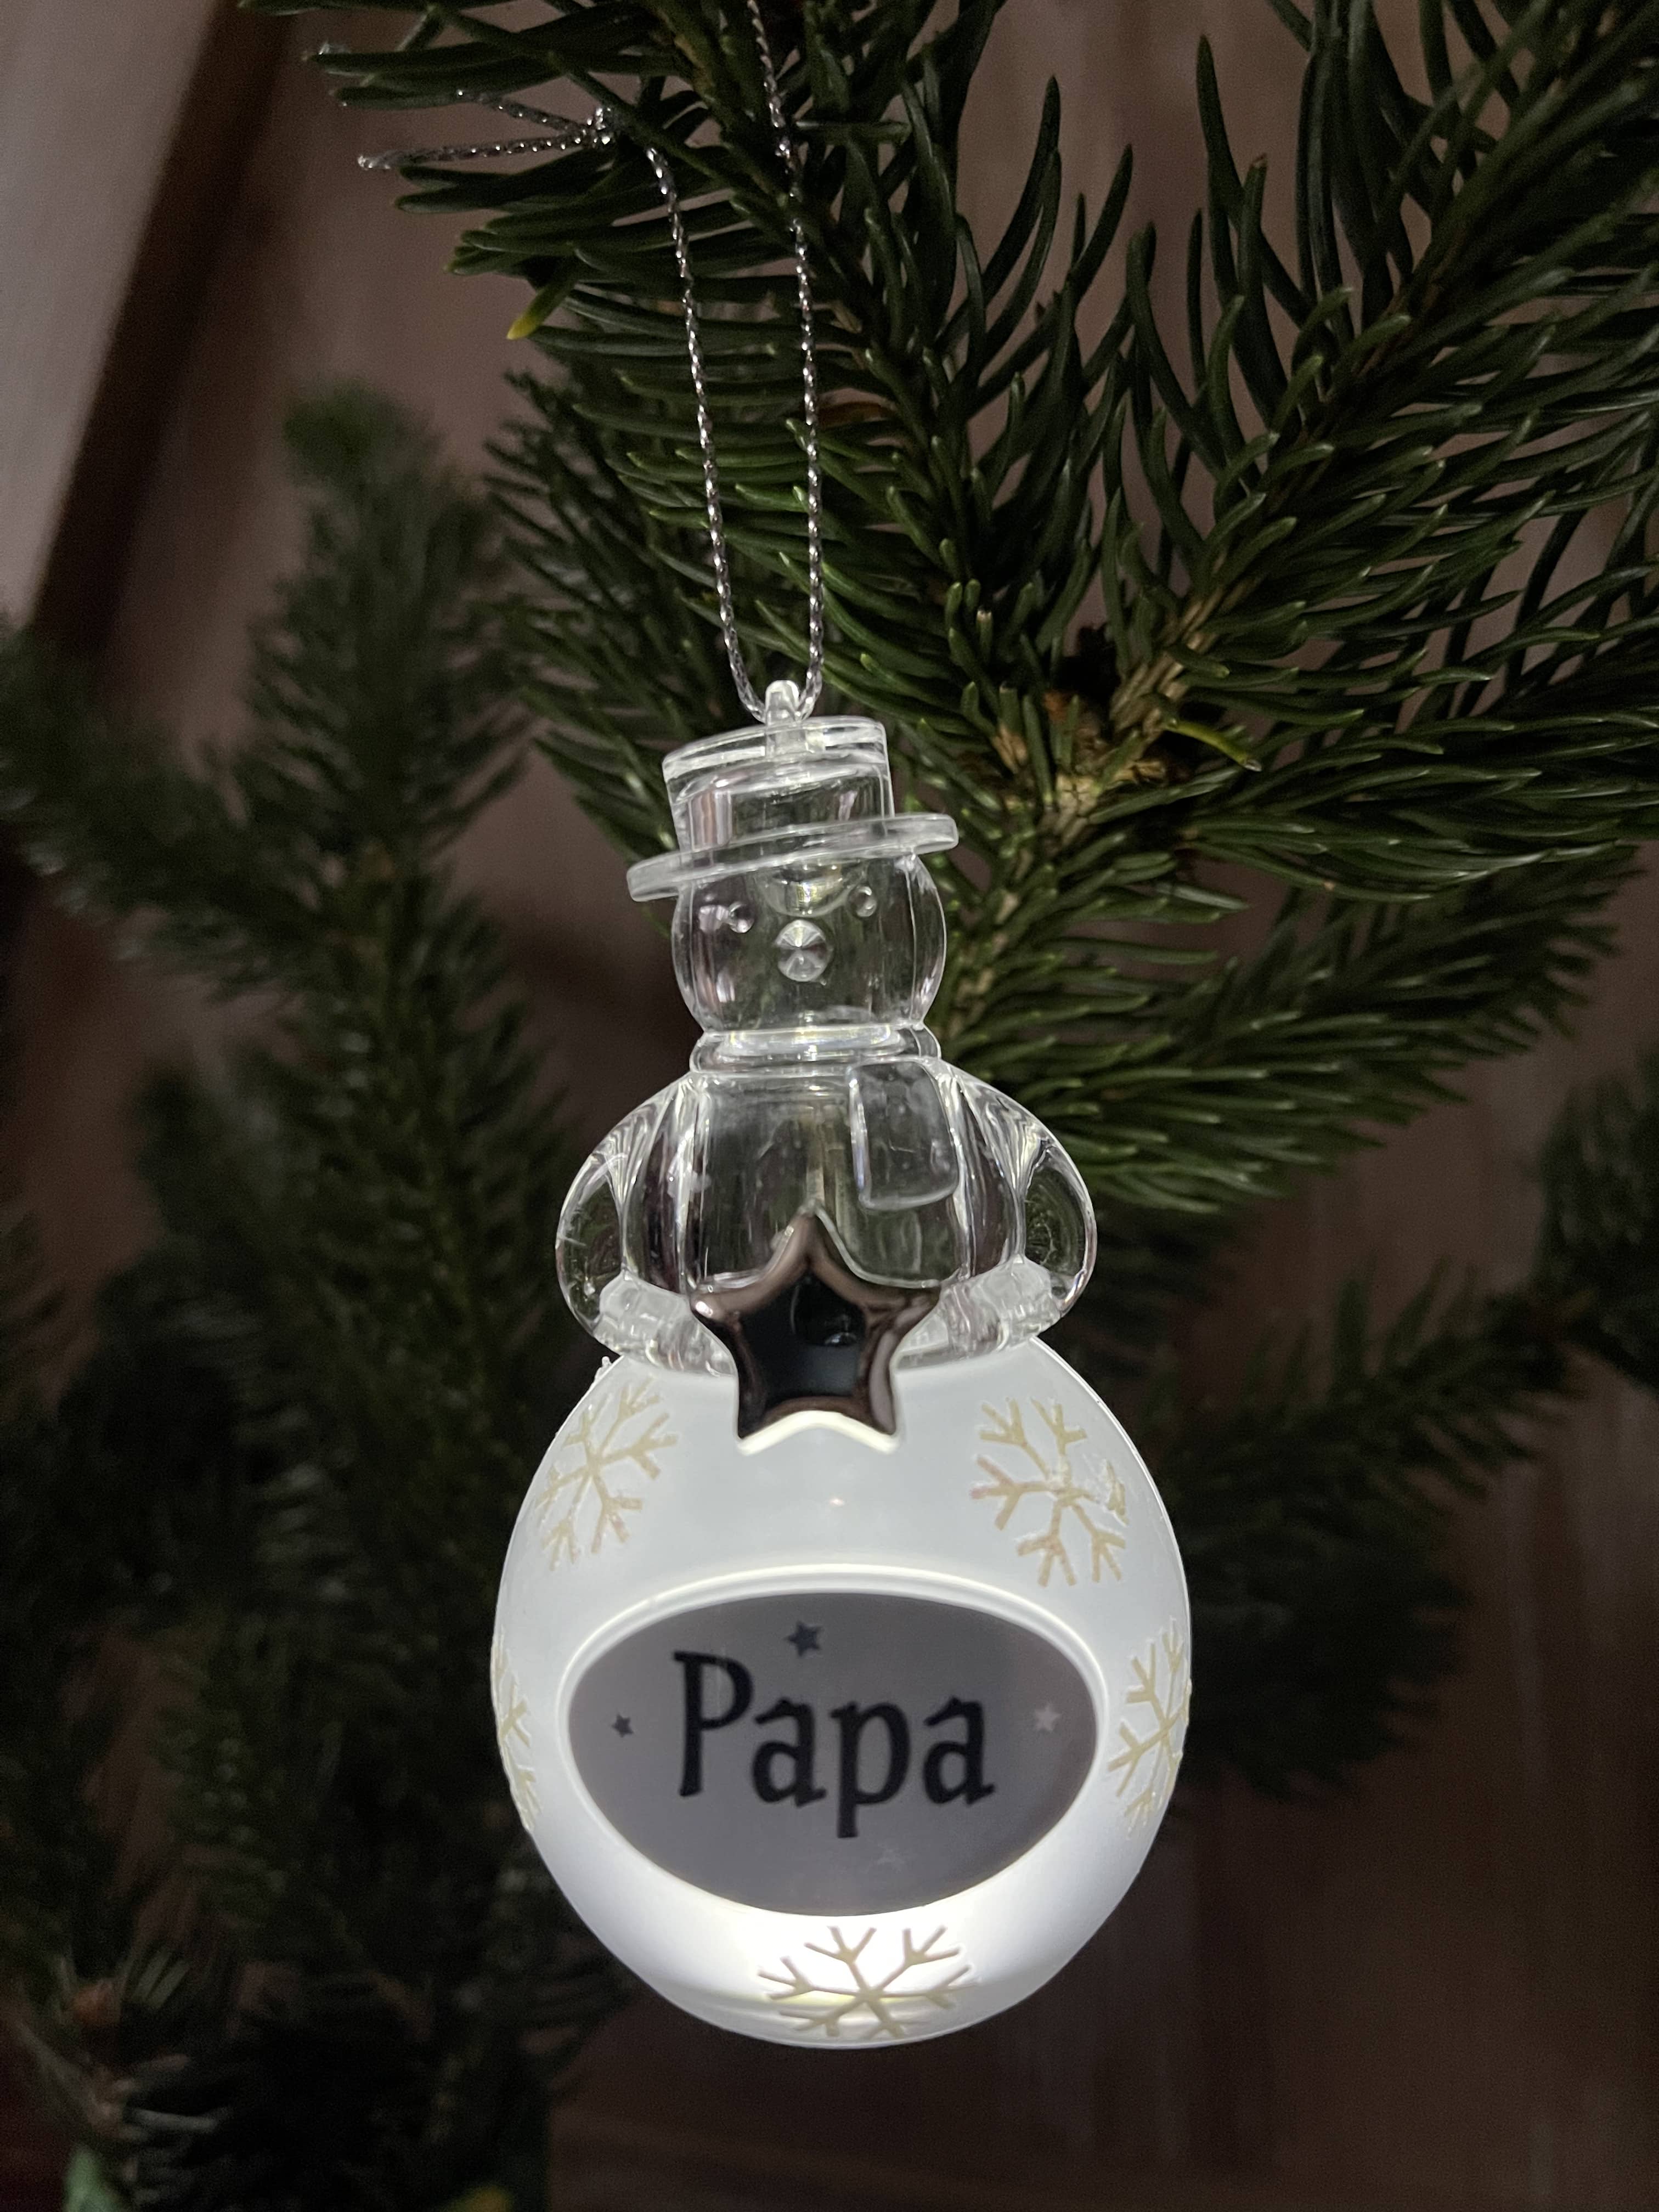 Karácsonyfadísz világító, Hóember - Papa